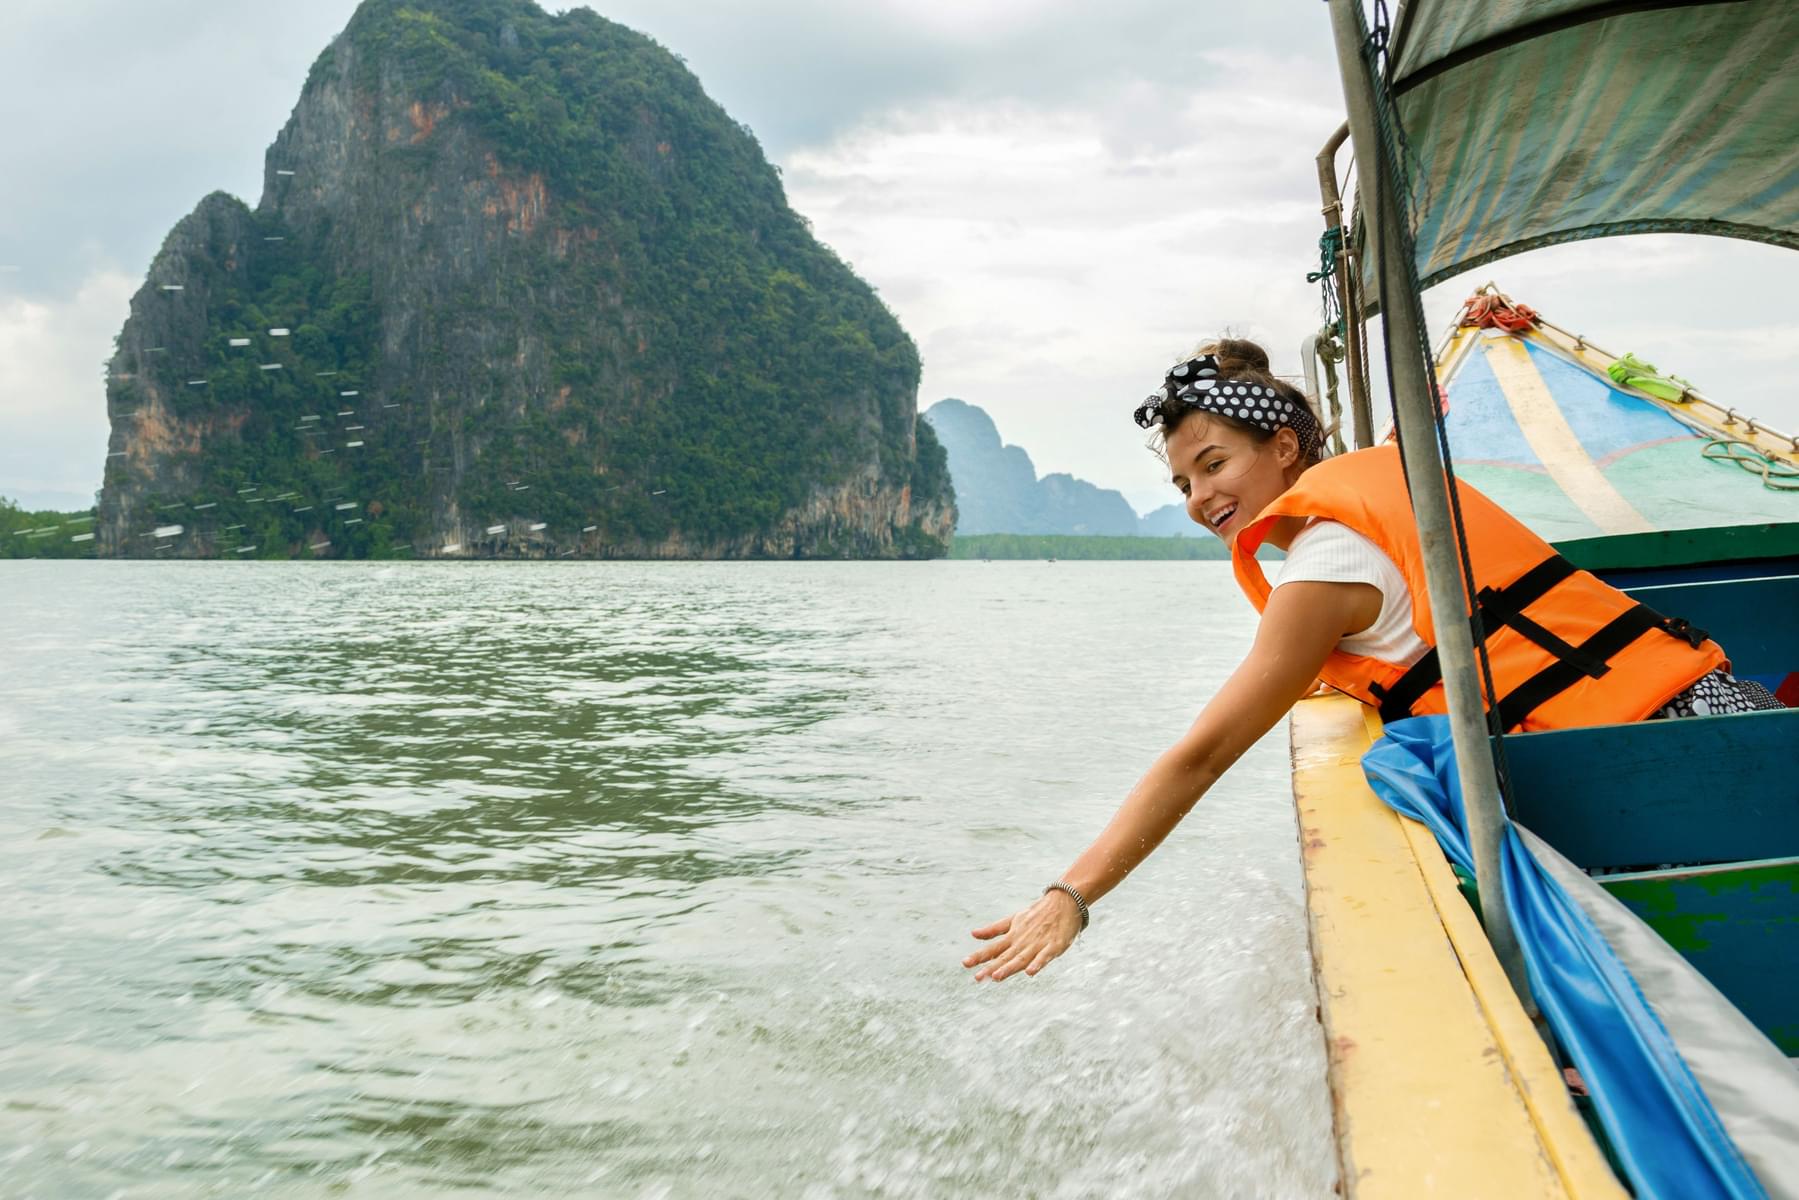 James Bond Island and Phang Nga Bay Day Tour with Sea Canoeing